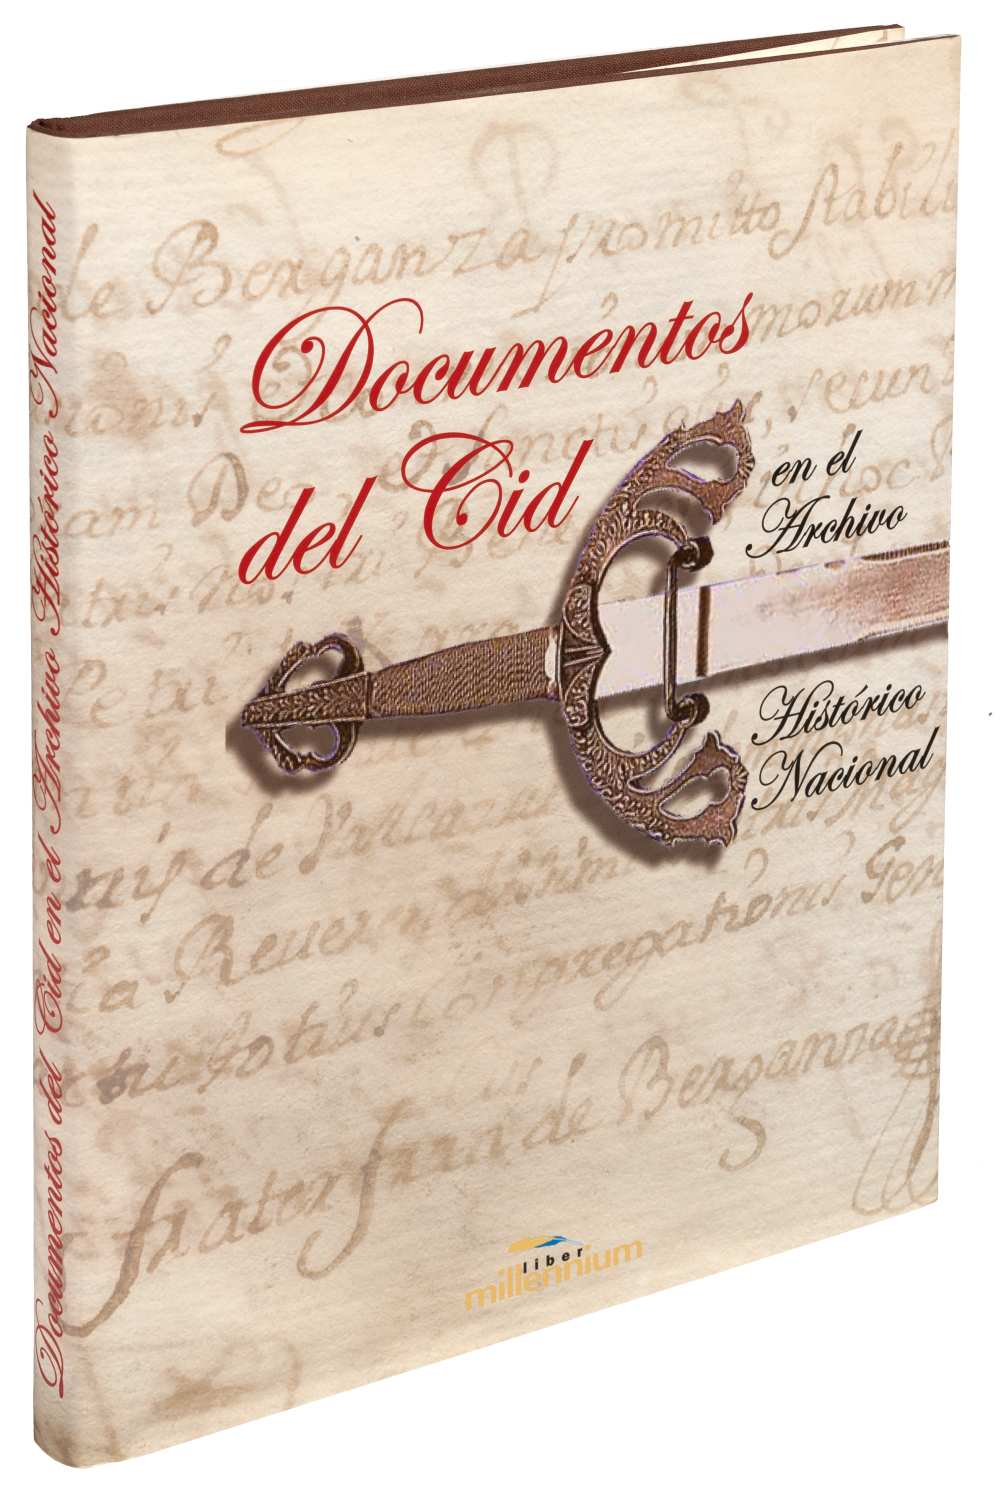 01 Documentos del Cid